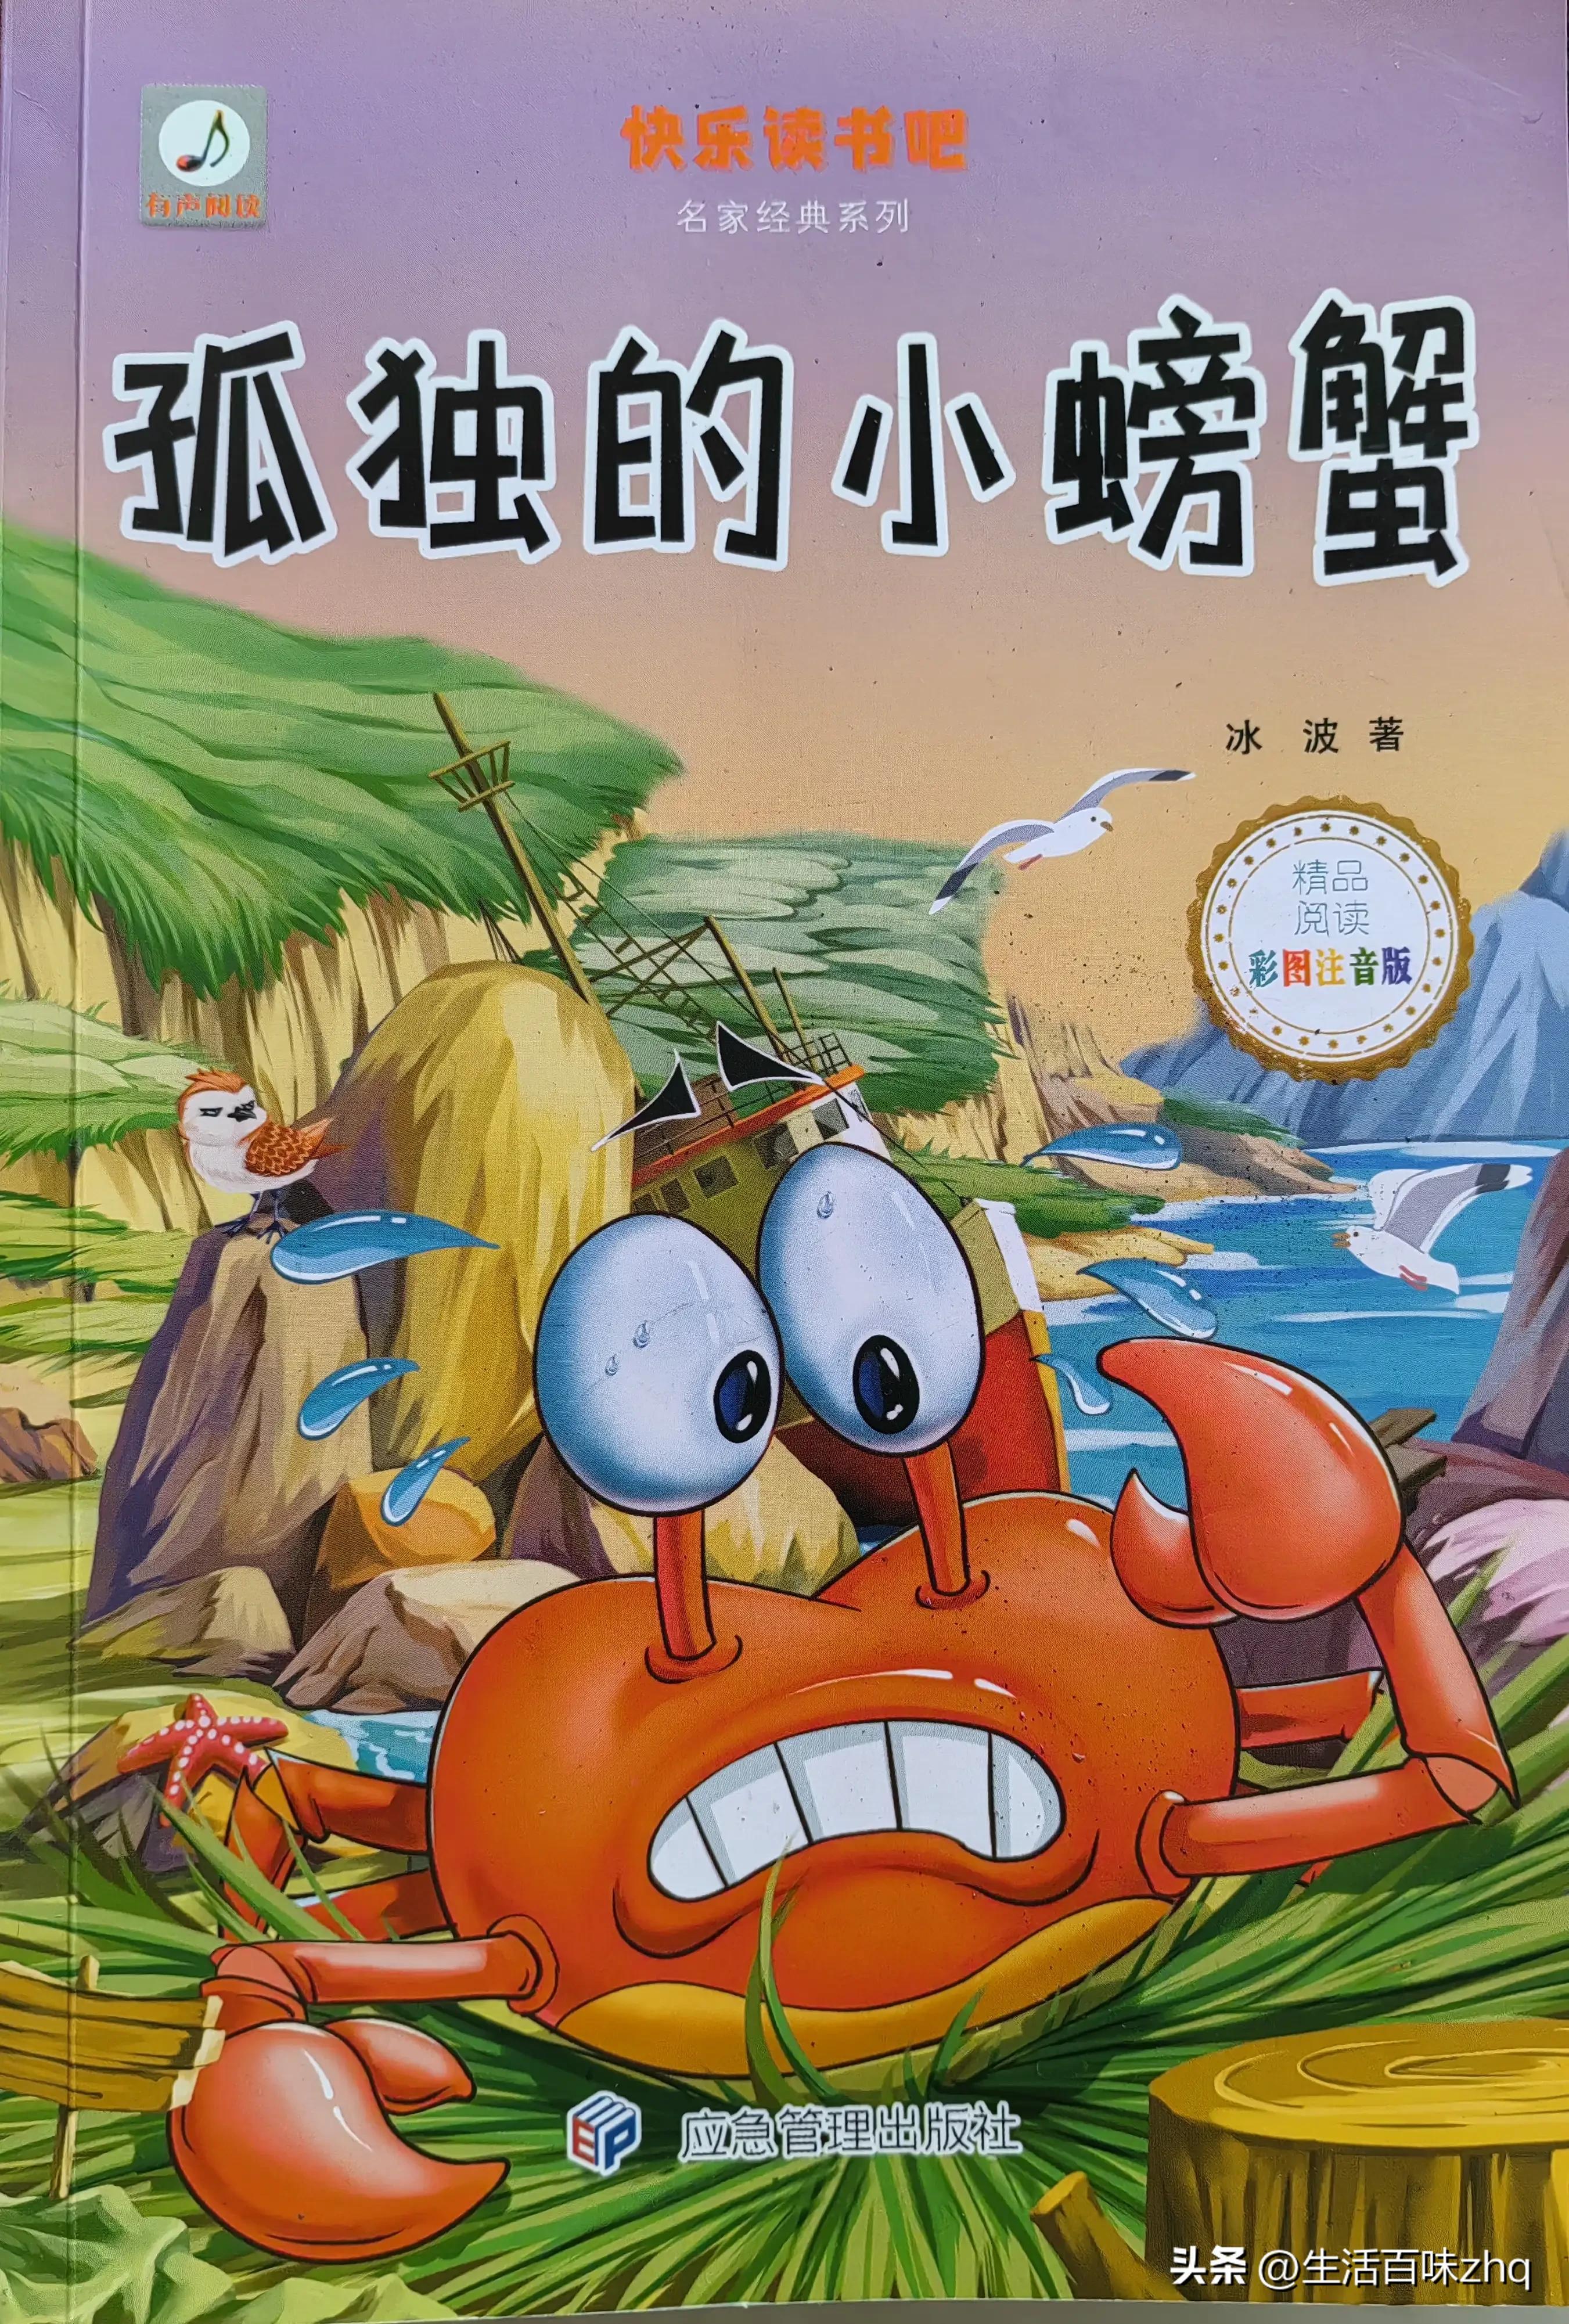 孤独的小螃蟹 电子书(孤独螃蟹寻找温暖的心灵港湾)